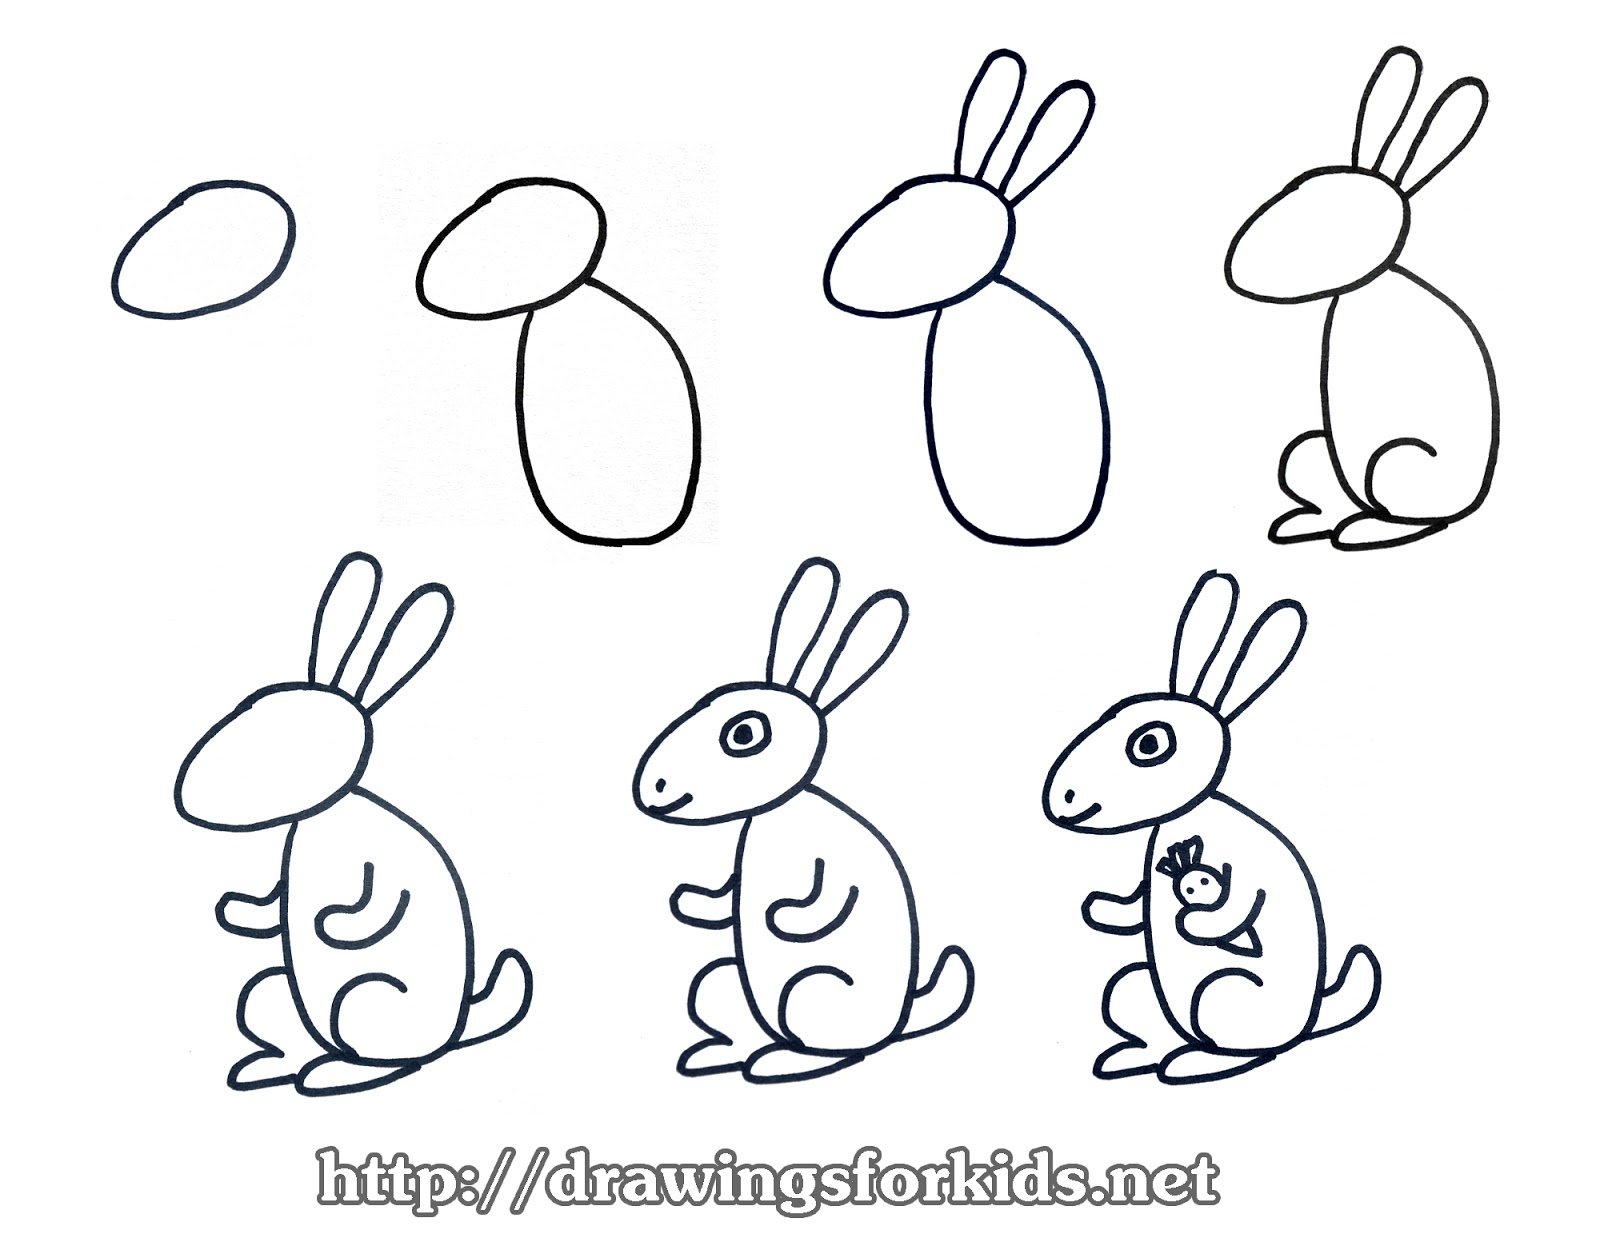 Схема рисования зайца для детей 5-6 лет